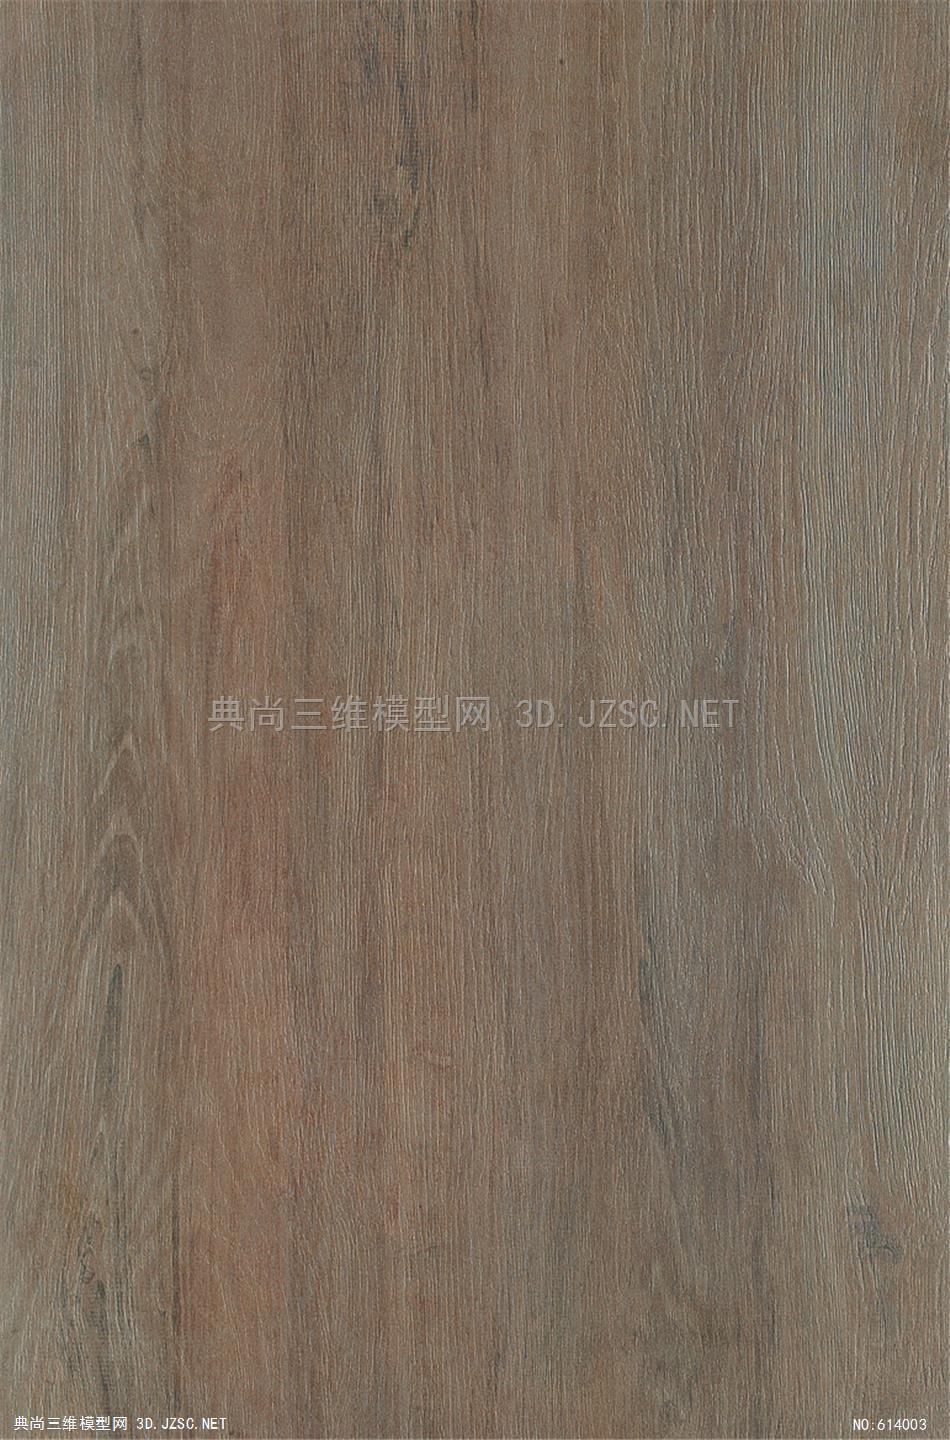 木饰面 木纹 木材  高清材质贴图 (215)